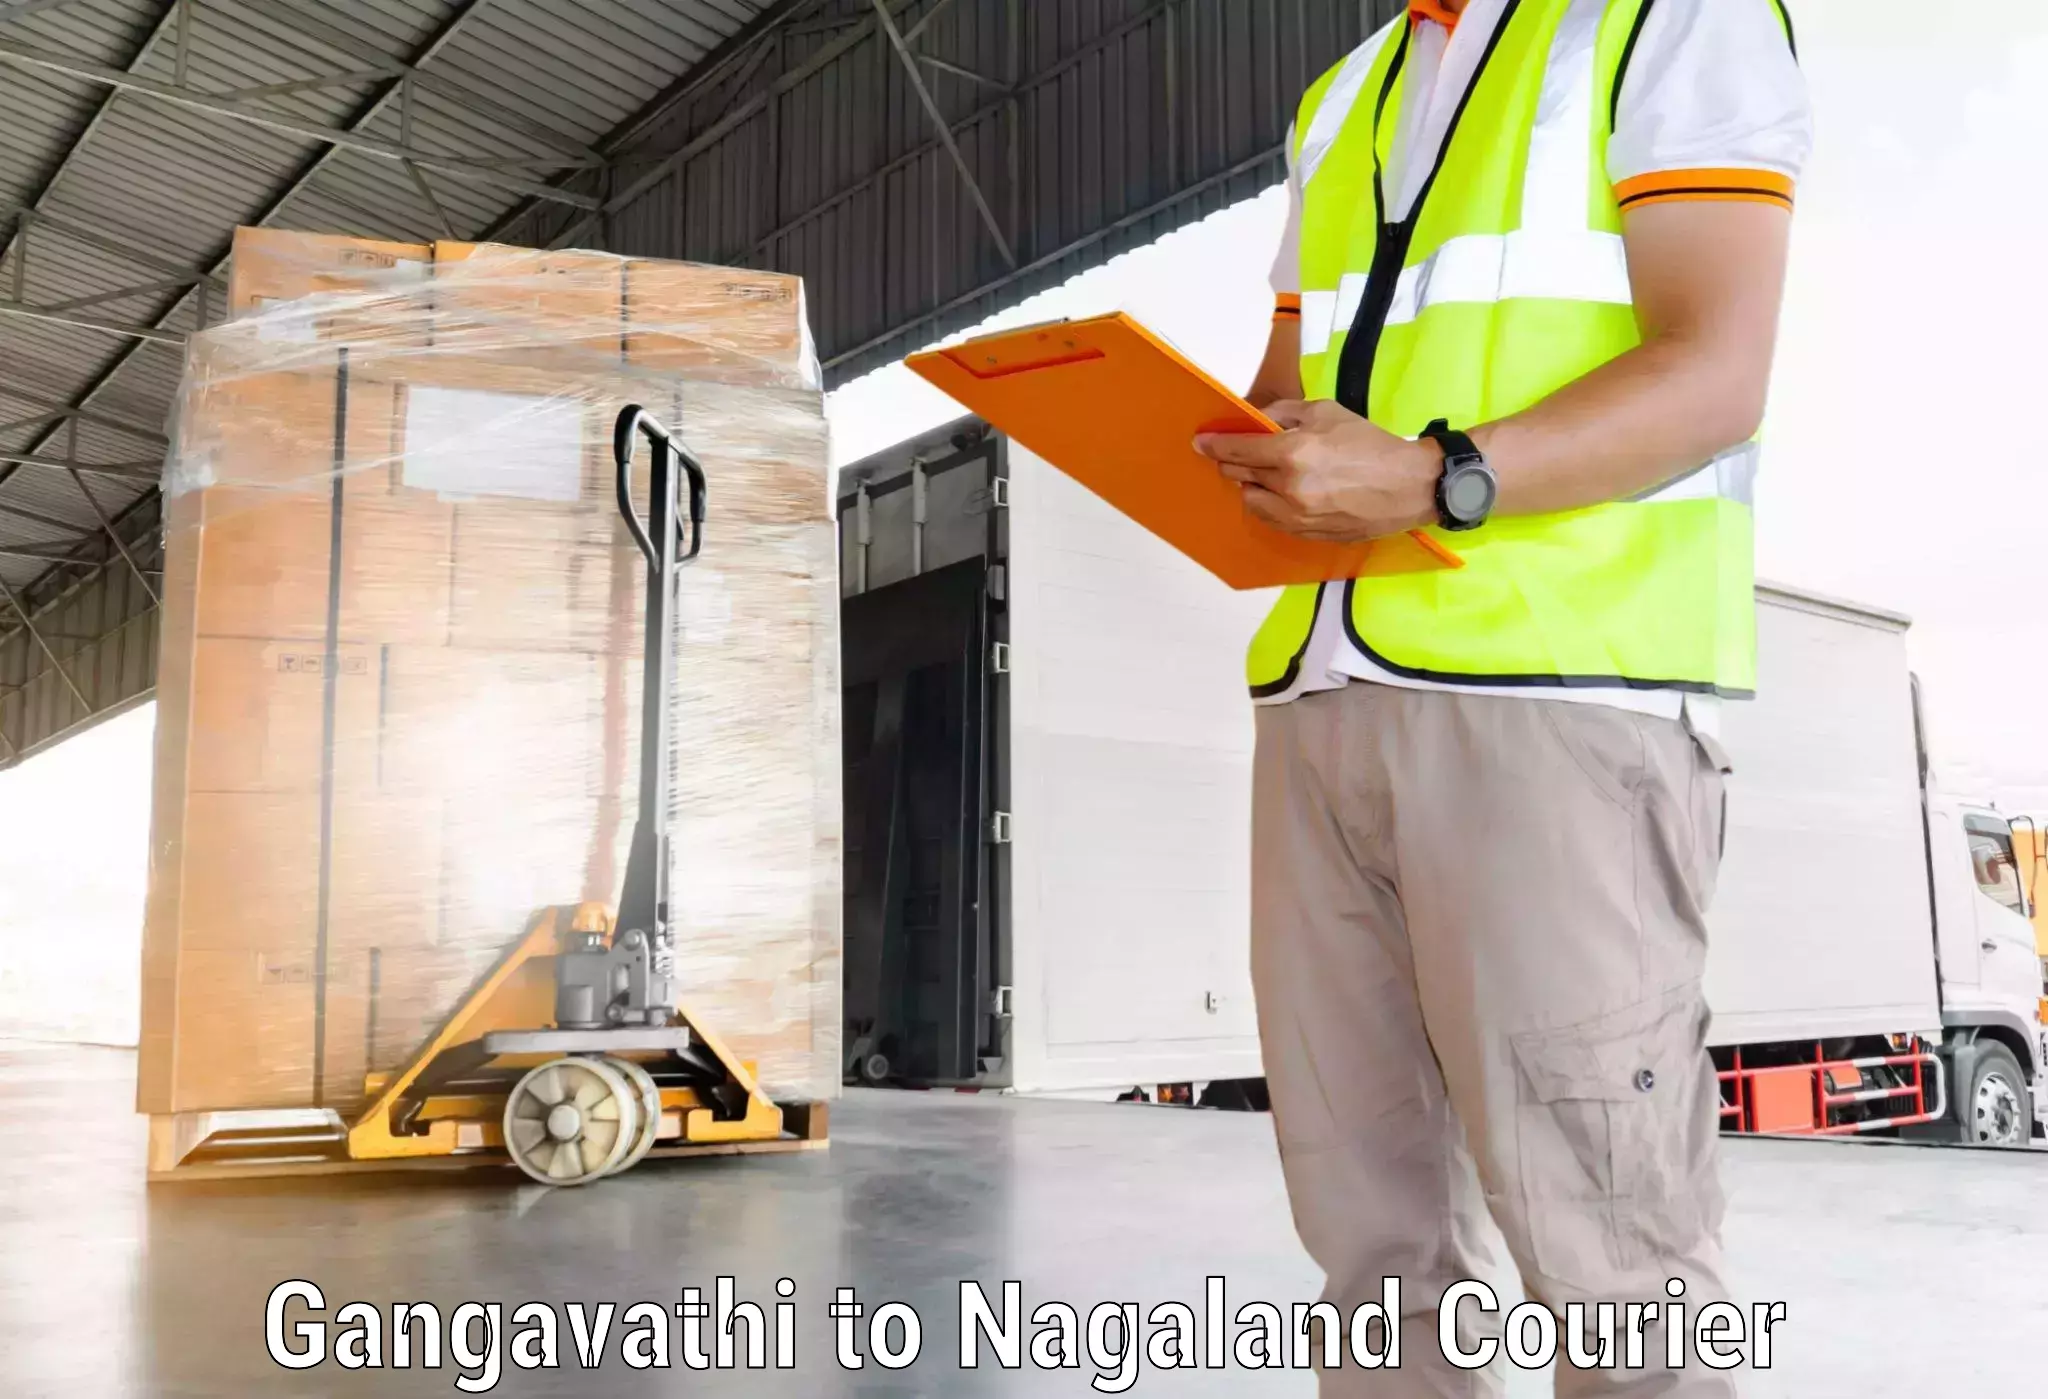 International courier networks Gangavathi to NIT Nagaland